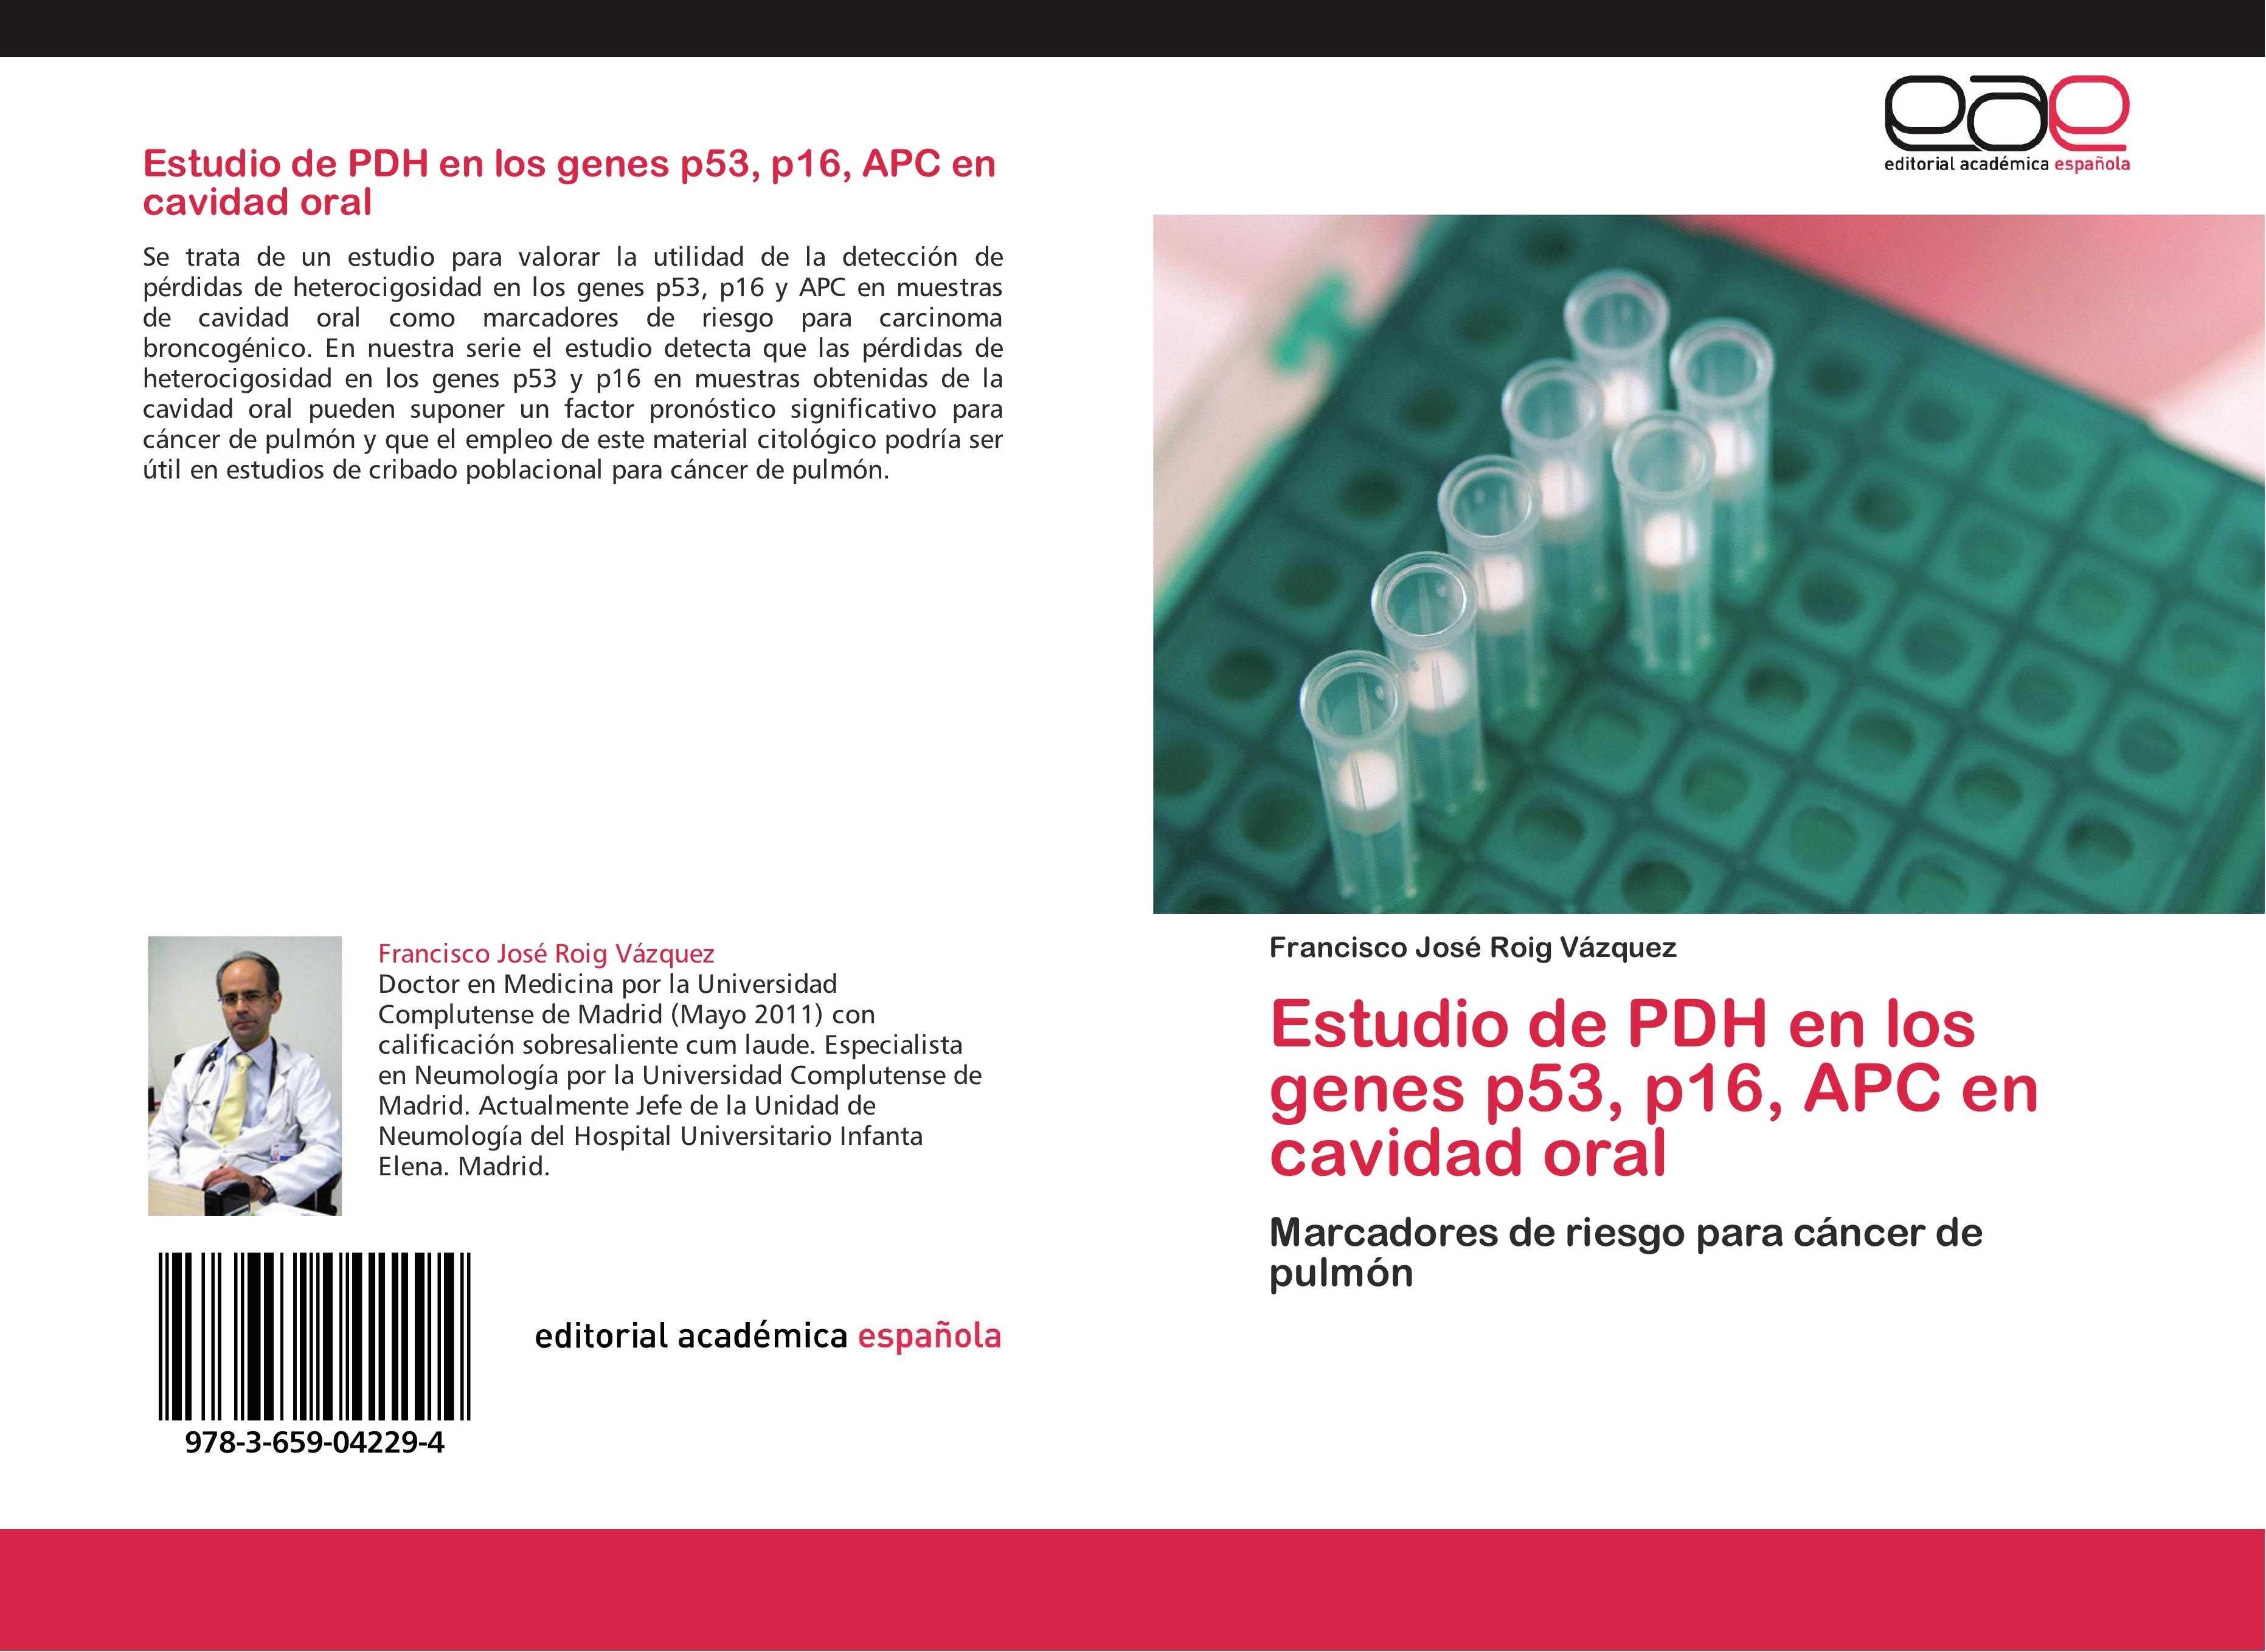 Estudio de PDH en los genes p53, p16, APC en cavidad oral / Marcadores de riesgo para cáncer de pulmón / Francisco José Roig Vázquez / Taschenbuch / Paperback / 92 S. / Spanisch / 2012 - Roig Vázquez, Francisco José